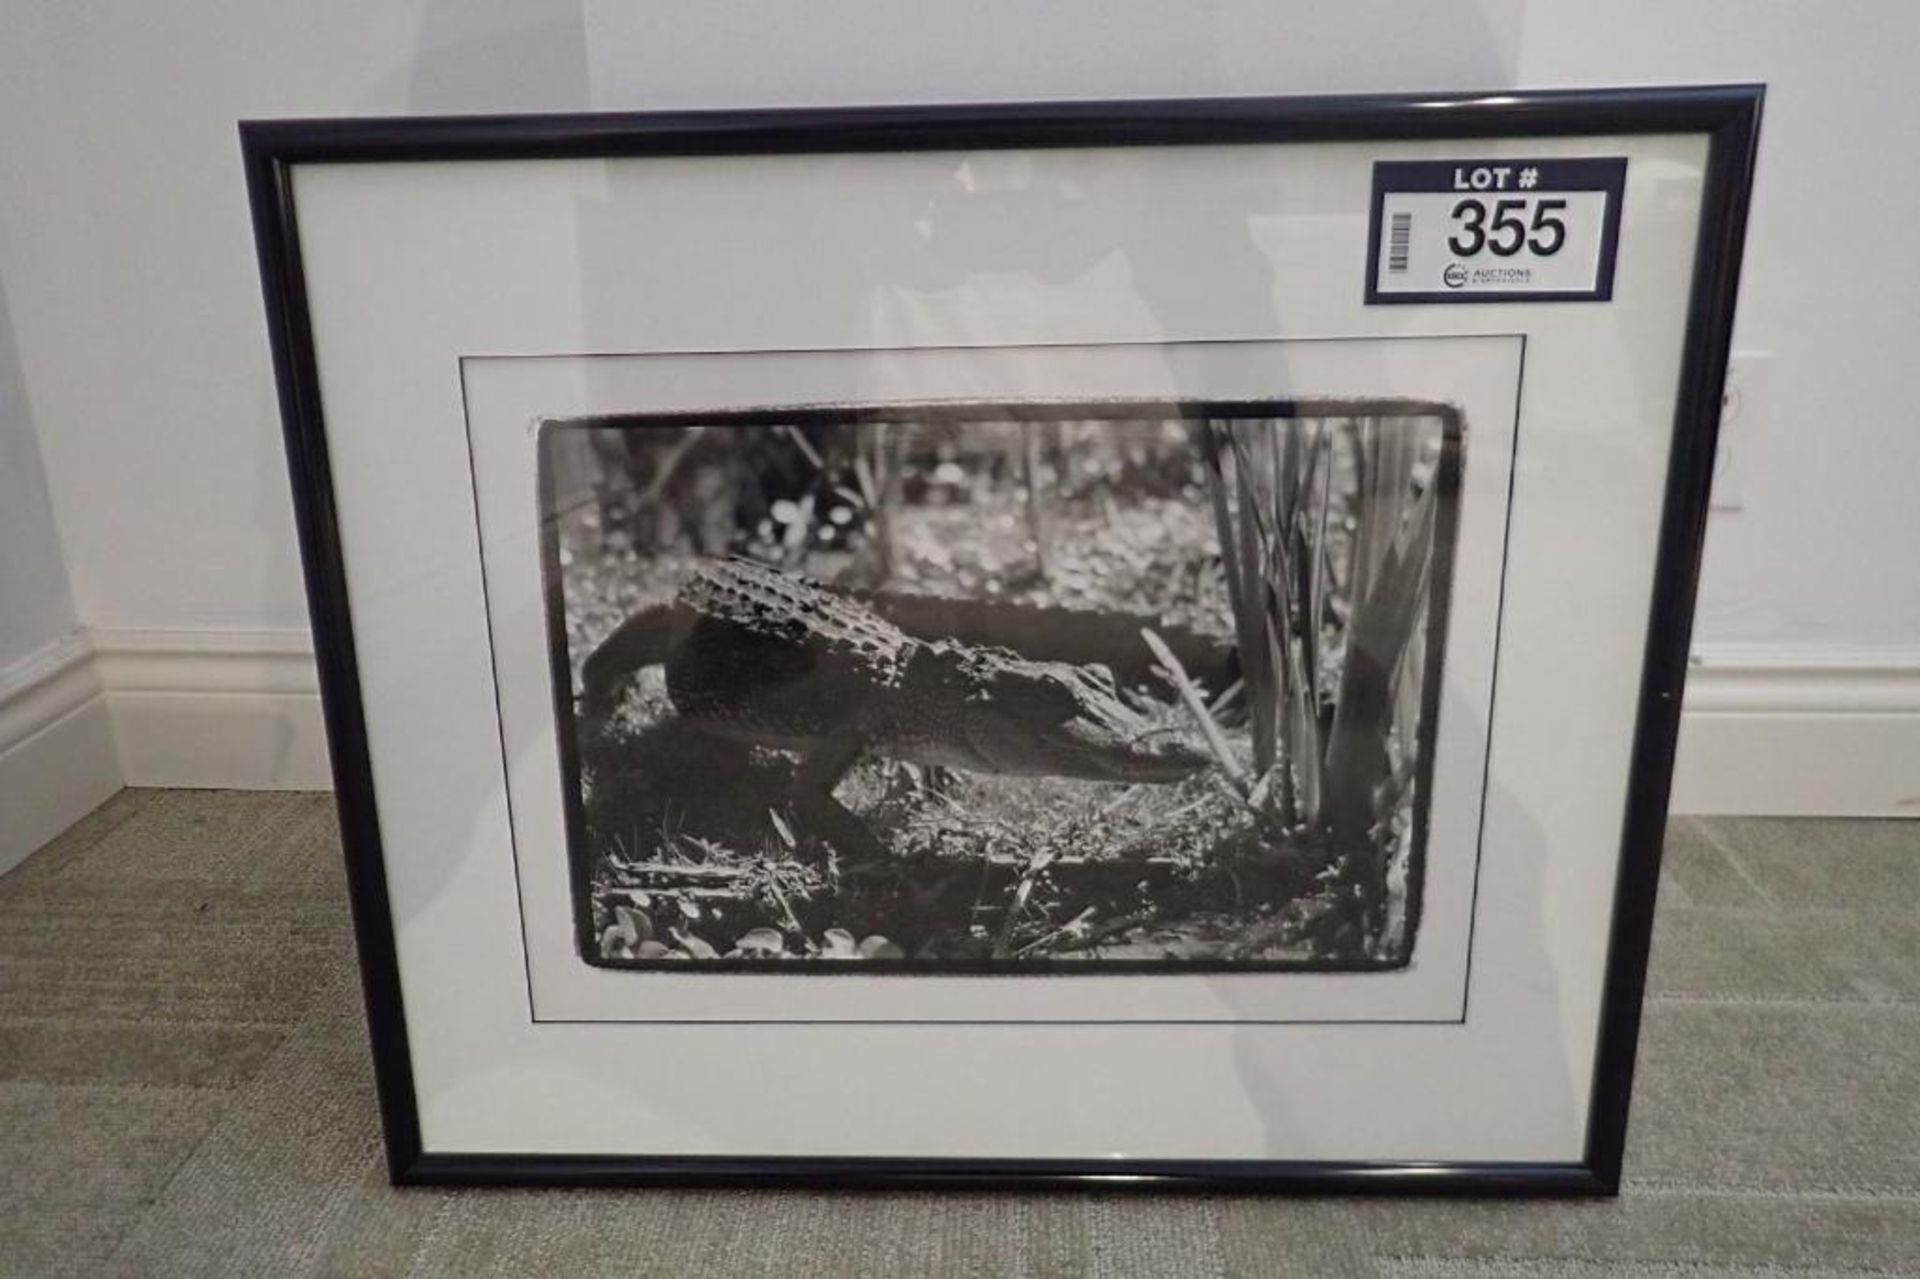 Framed 24 1/2"x21 1/2" Alligator Picture.